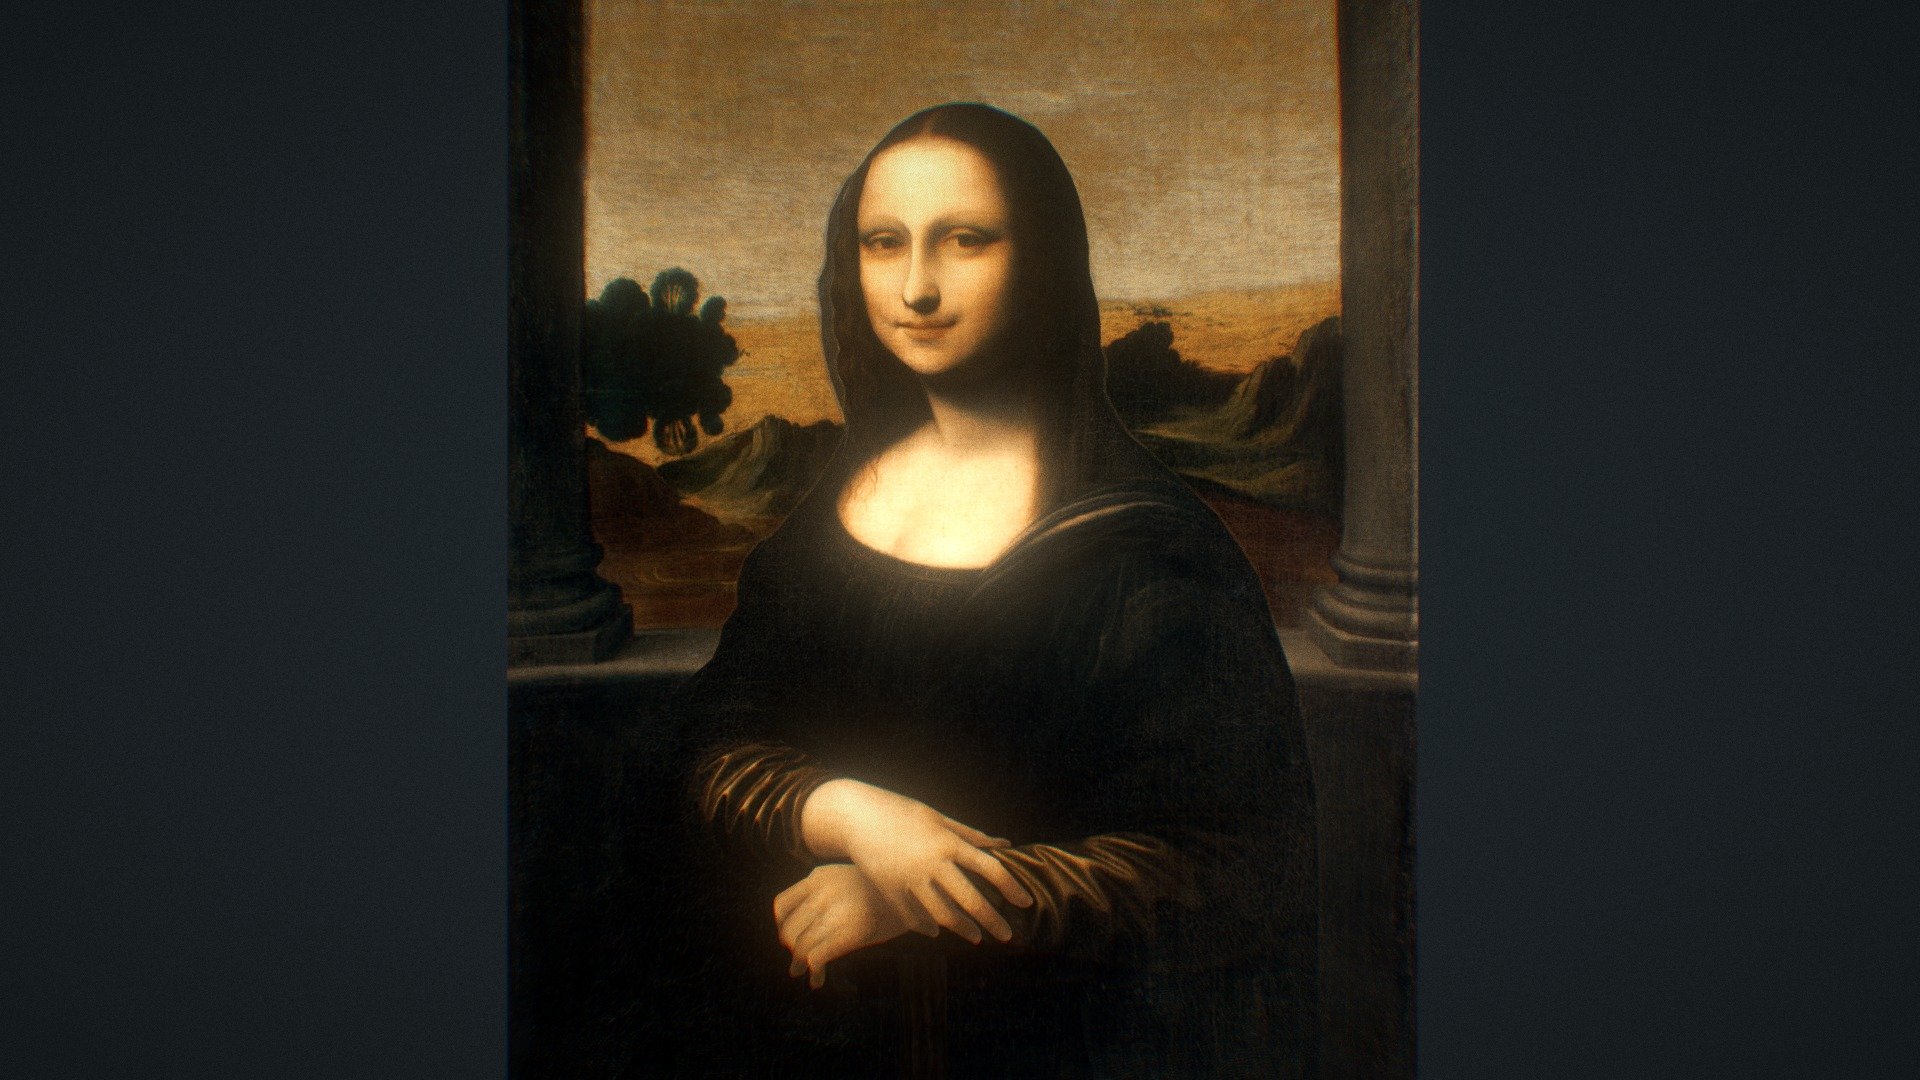 Isleworth Mona Lisa 3D - 3D model by hinxlinx [da64e56] - Sketchfab